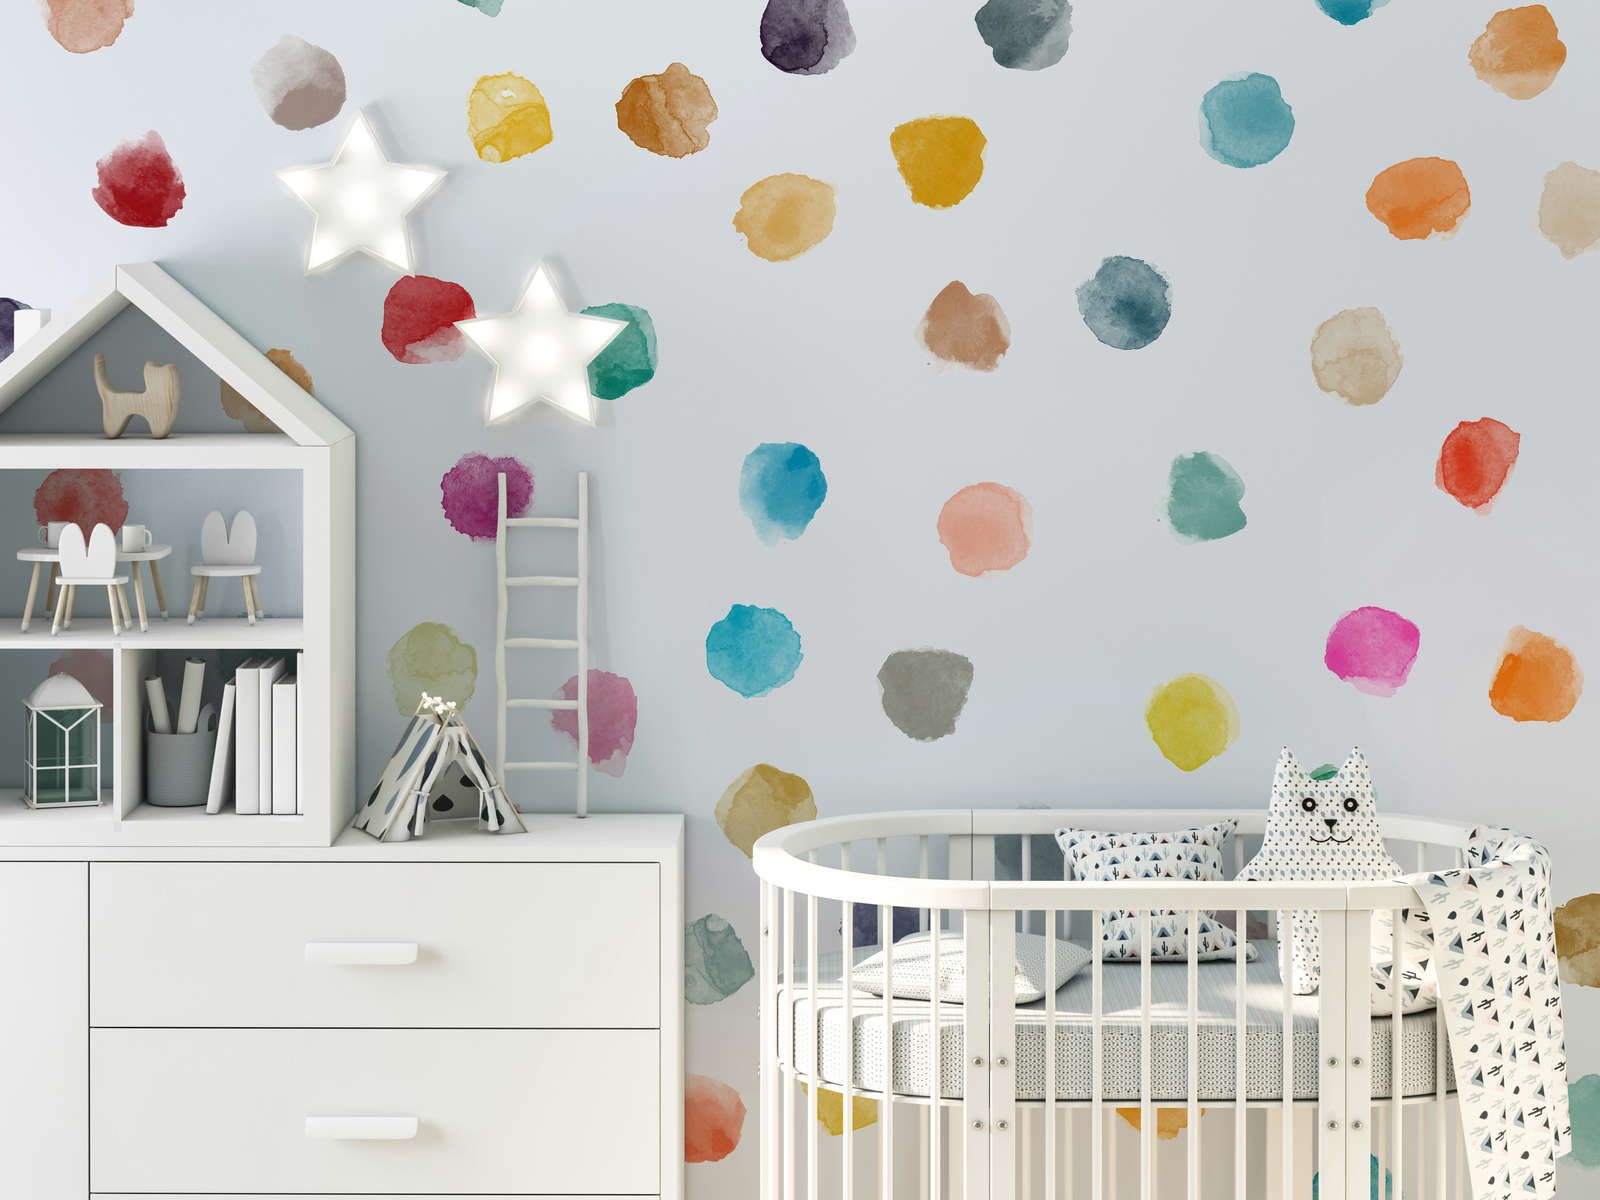             Kinderkamer muurschildering met kleurrijke stippen - Glad & parelmoer fleece
        